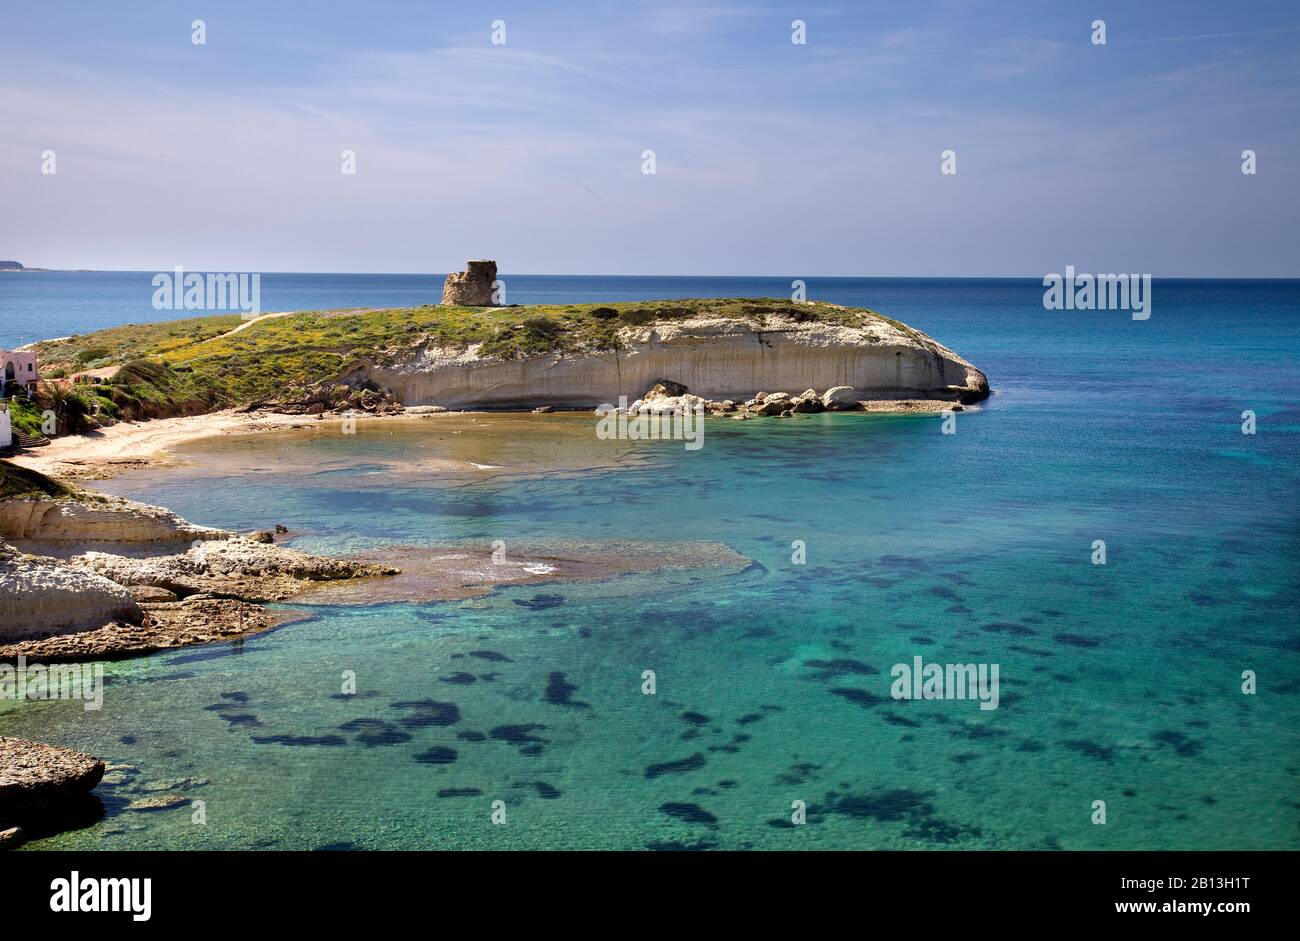 West coast of Sardinia. Italy Stock Photo